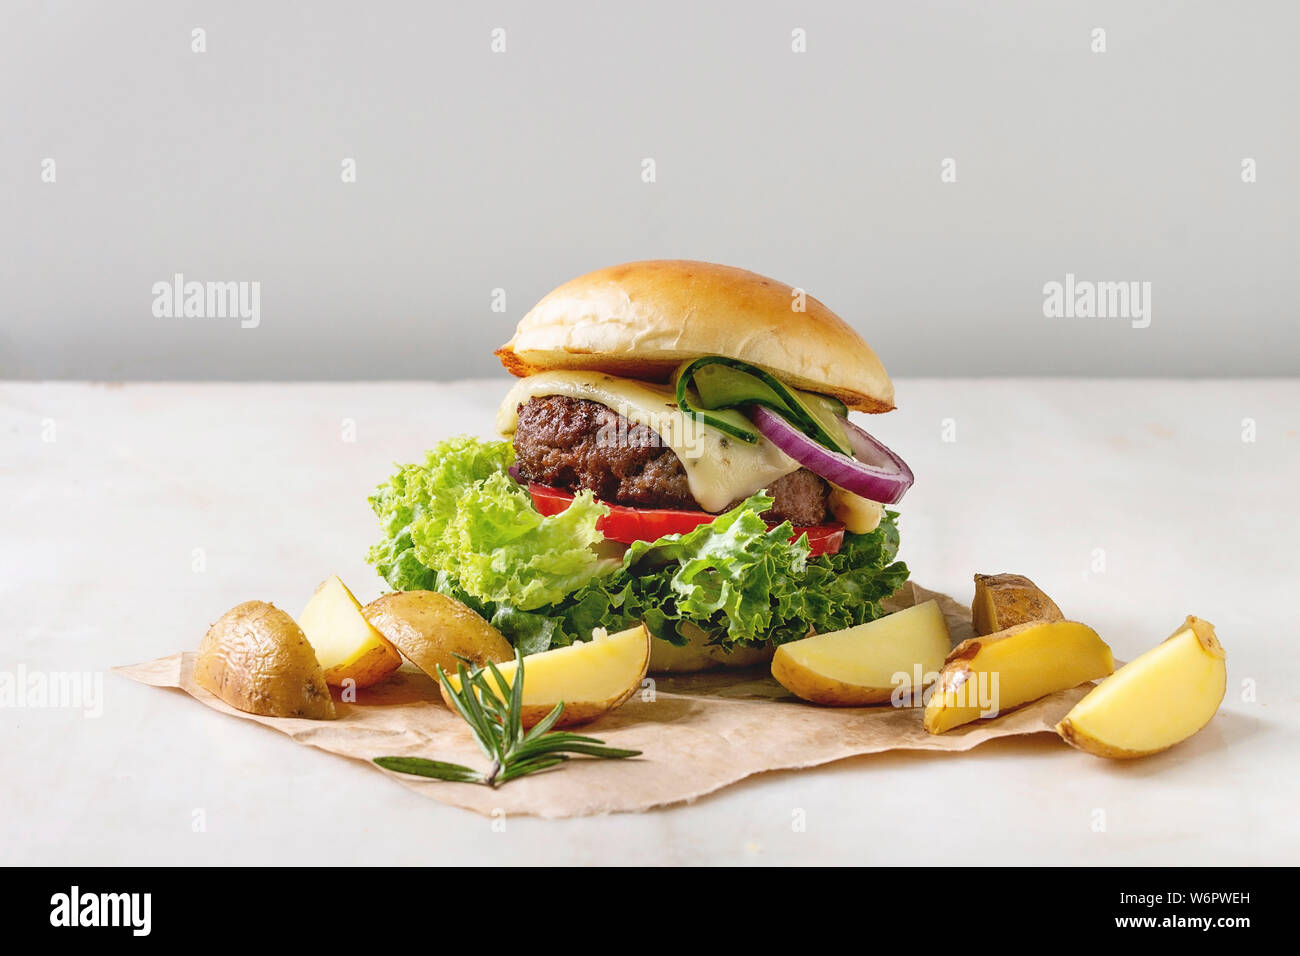 Hausgemachte Fast Food Burger classic Hamburger oder Cheeseburger mit Rindfleisch, Salat, Käse und Tomaten serviert auf Papier mit gebackenen Land Kartoffeln auf Weiß m Stockfoto